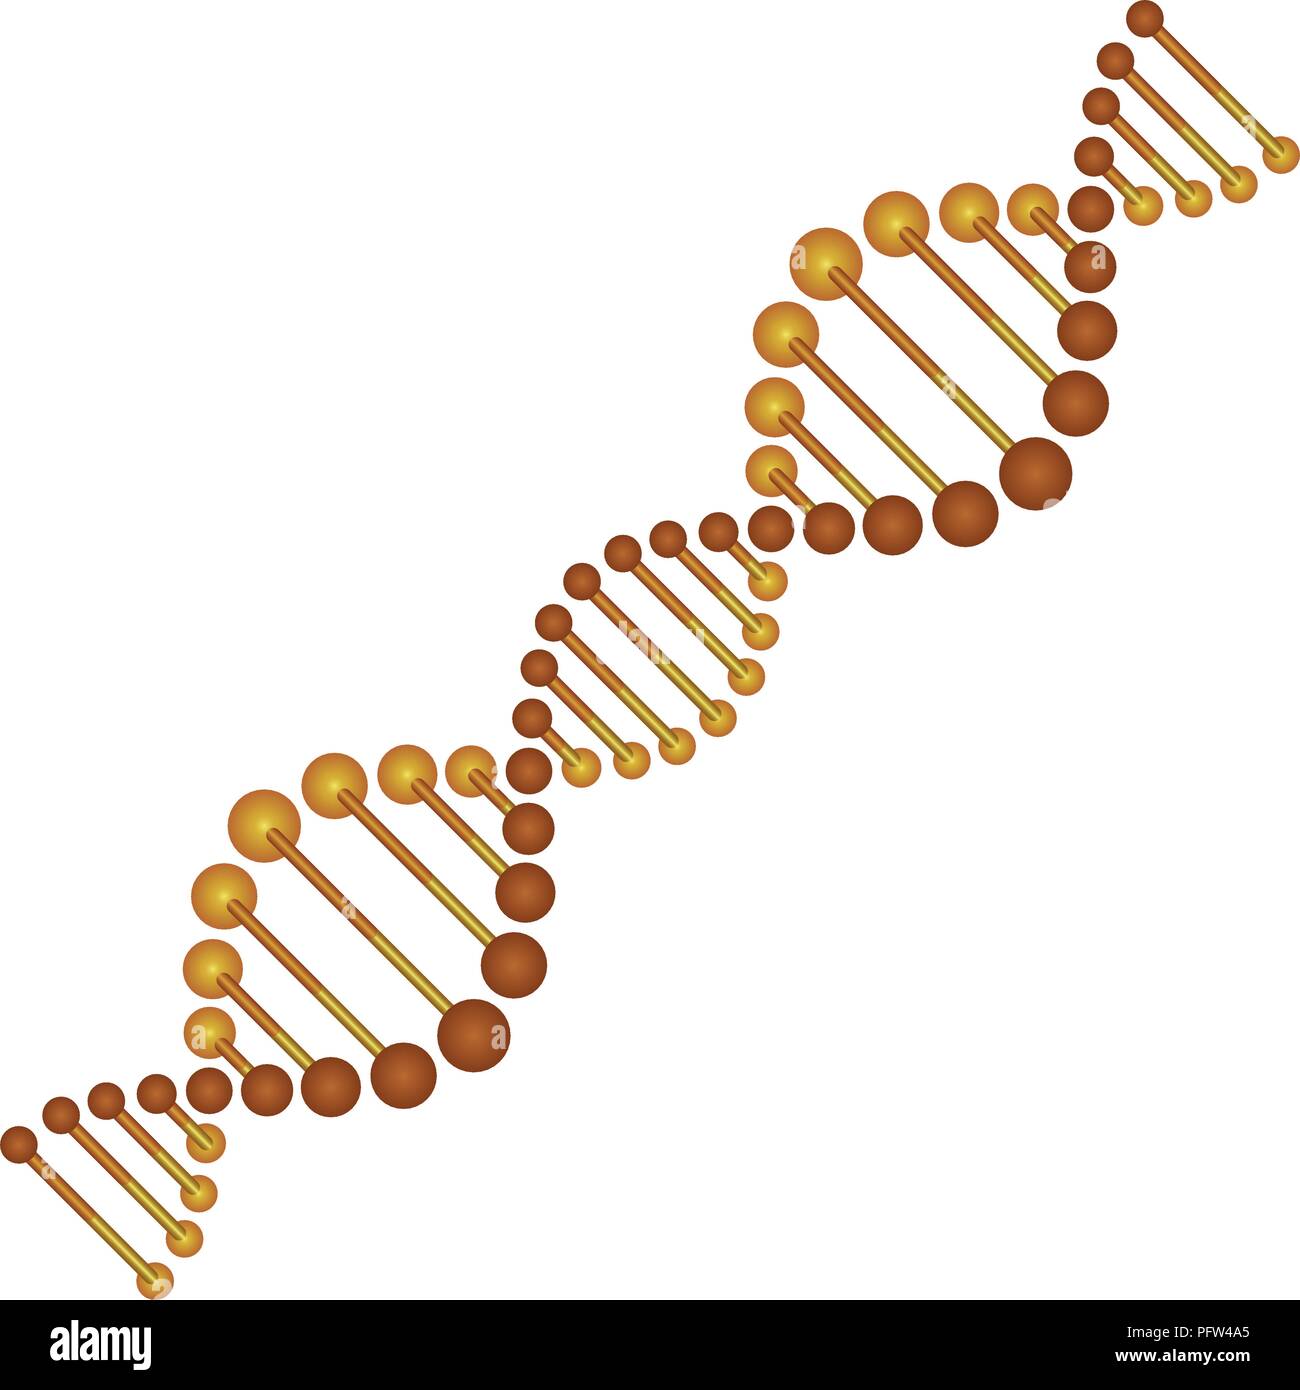 La science de la chaîne d'ADN en diagonale la couleur d'or Image  Vectorielle Stock - Alamy